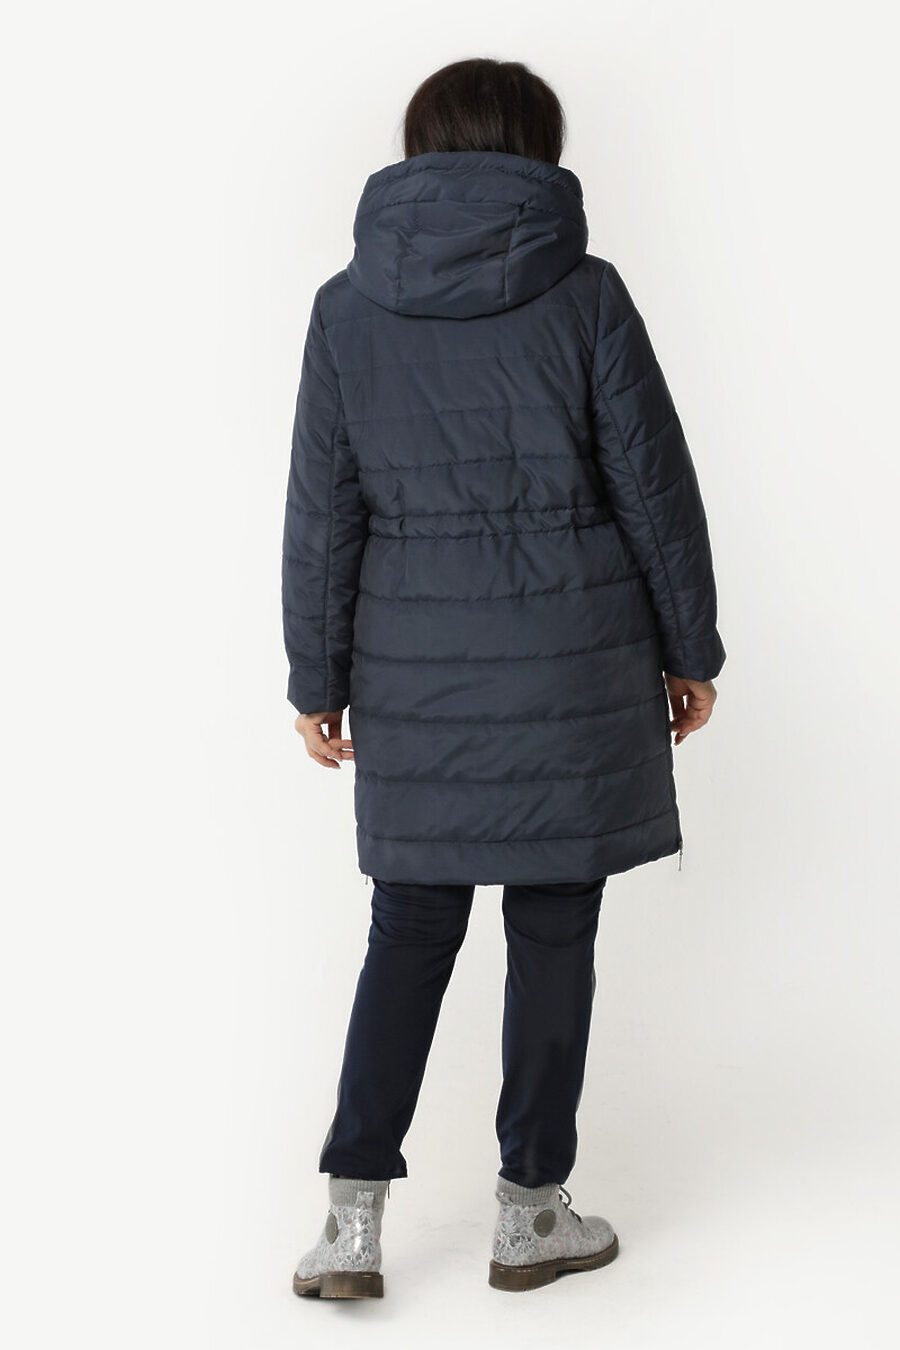 Пальто DIWAY (684817), купить в Moyo.moda